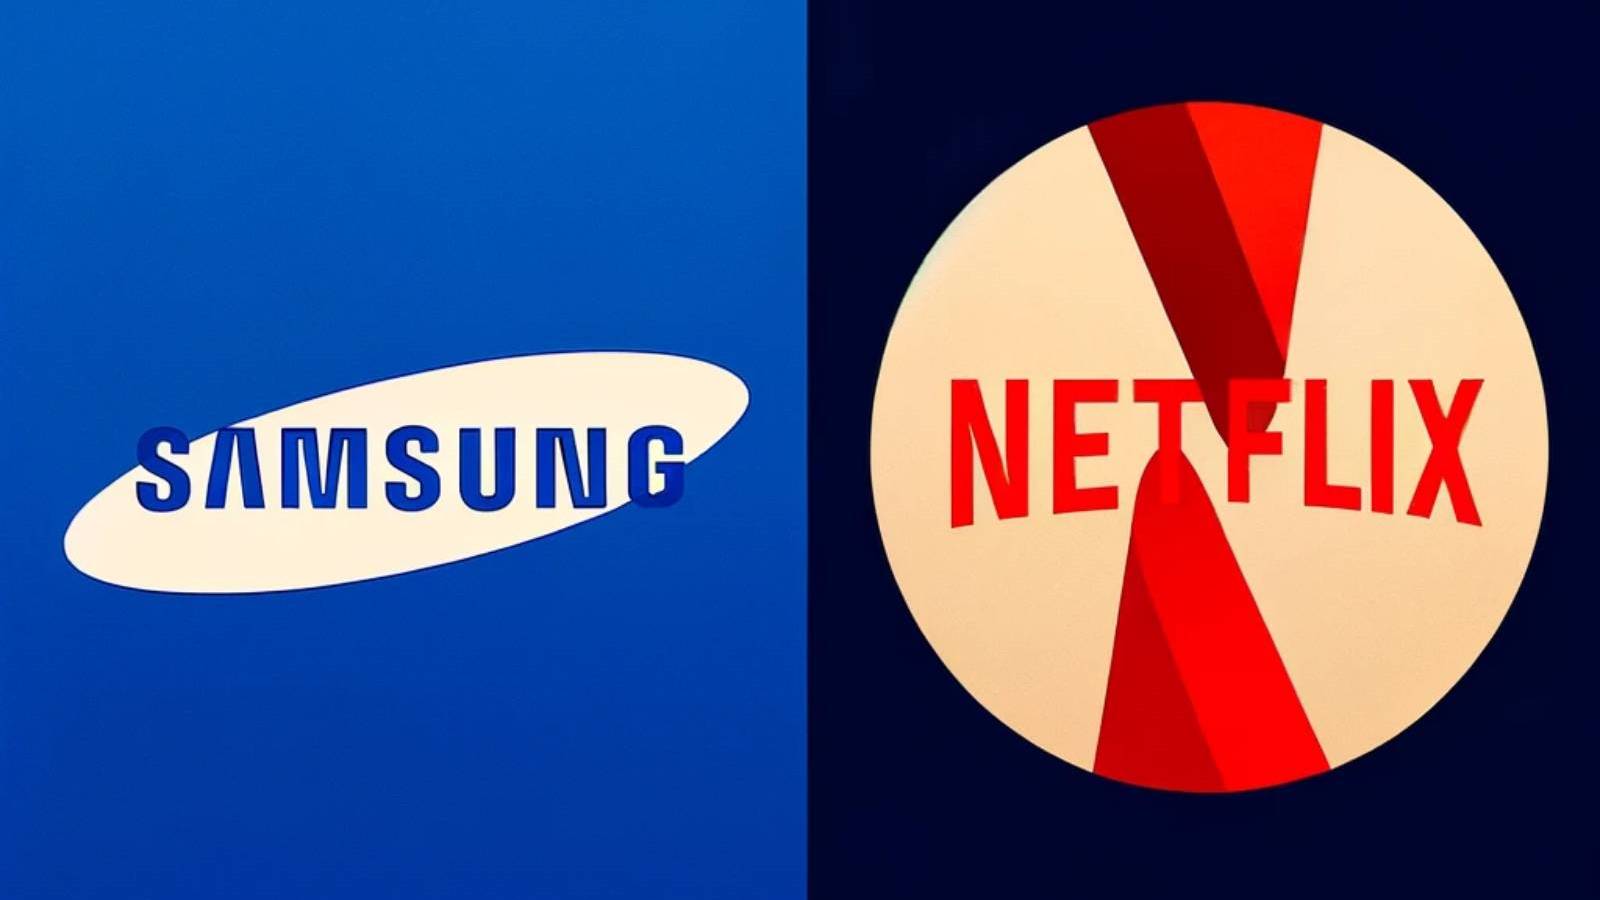 Belangrijke aankondiging van Samsung met Netflix, welke beslissing de bedrijven hebben genomen